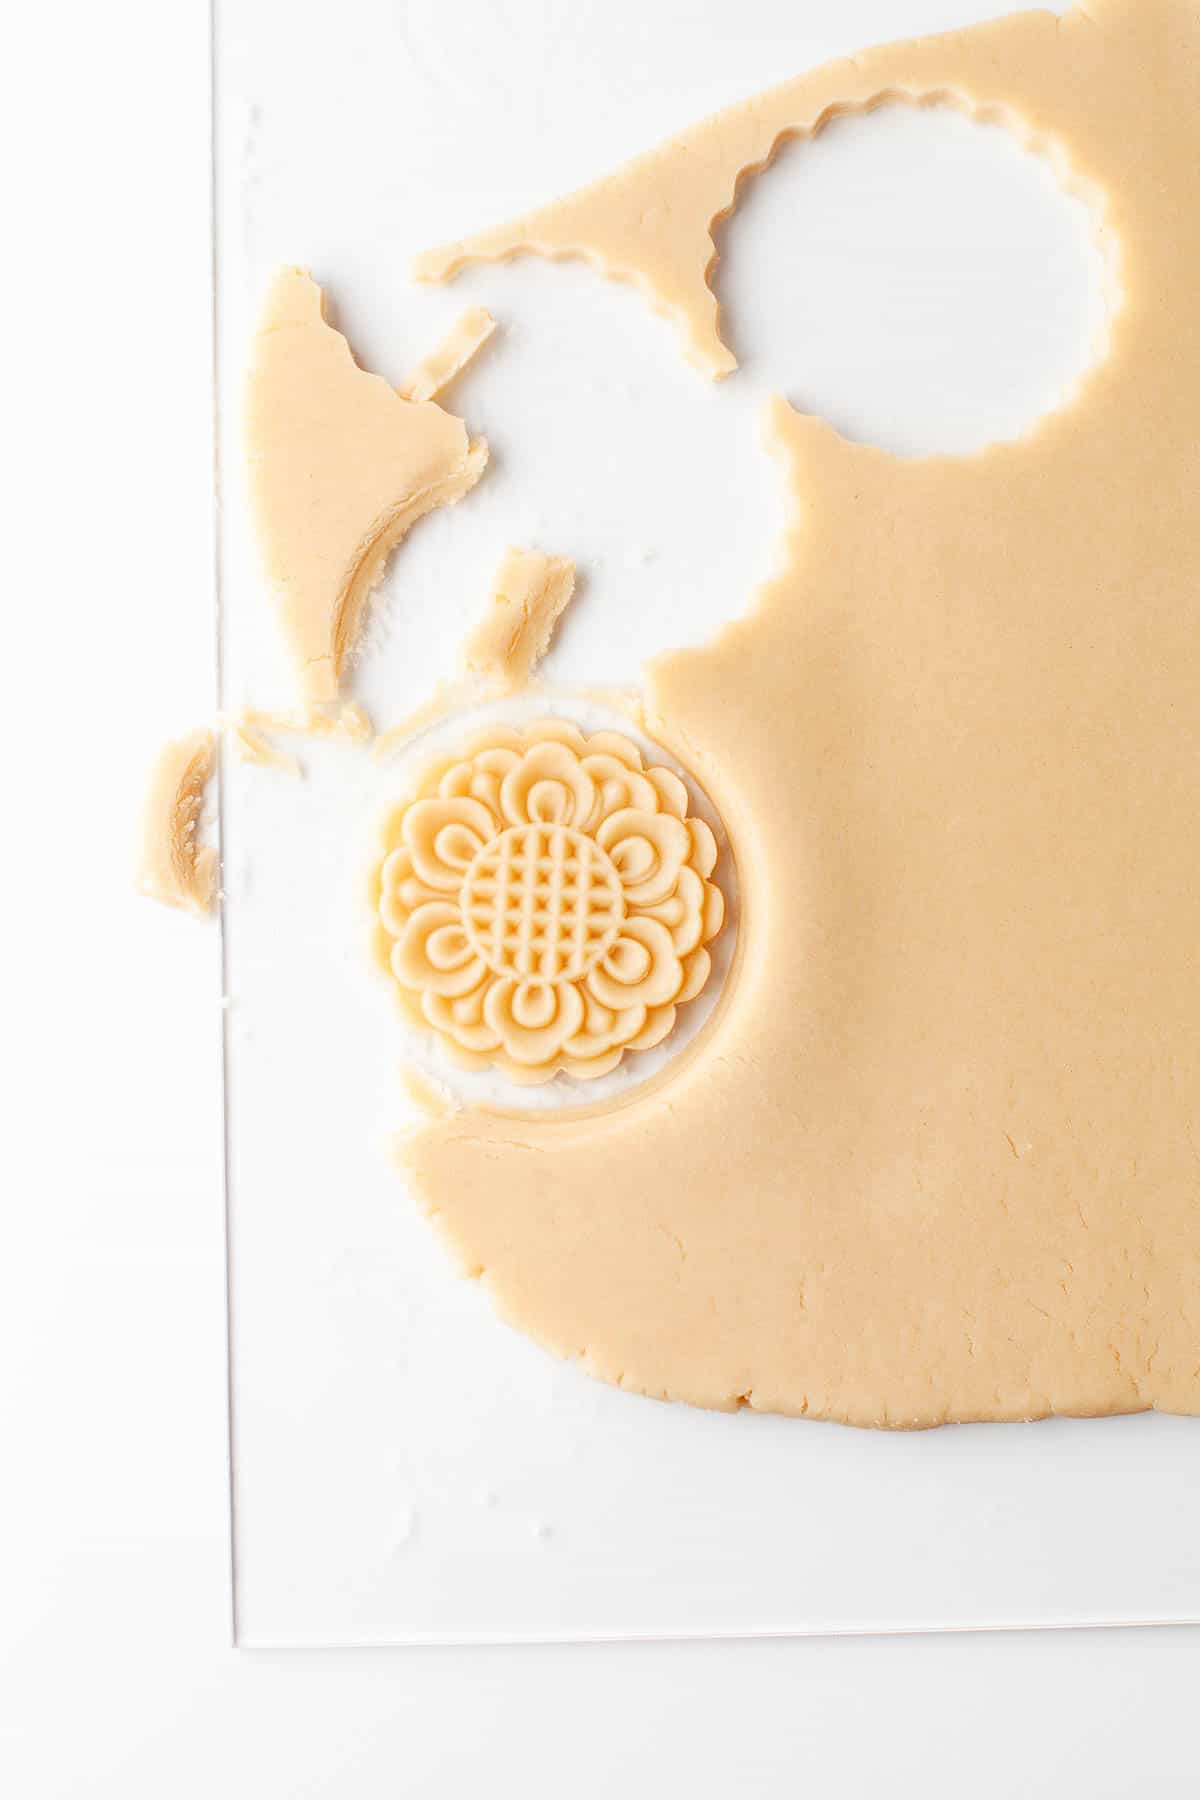 An image of a dulce de leche cookie cutter.